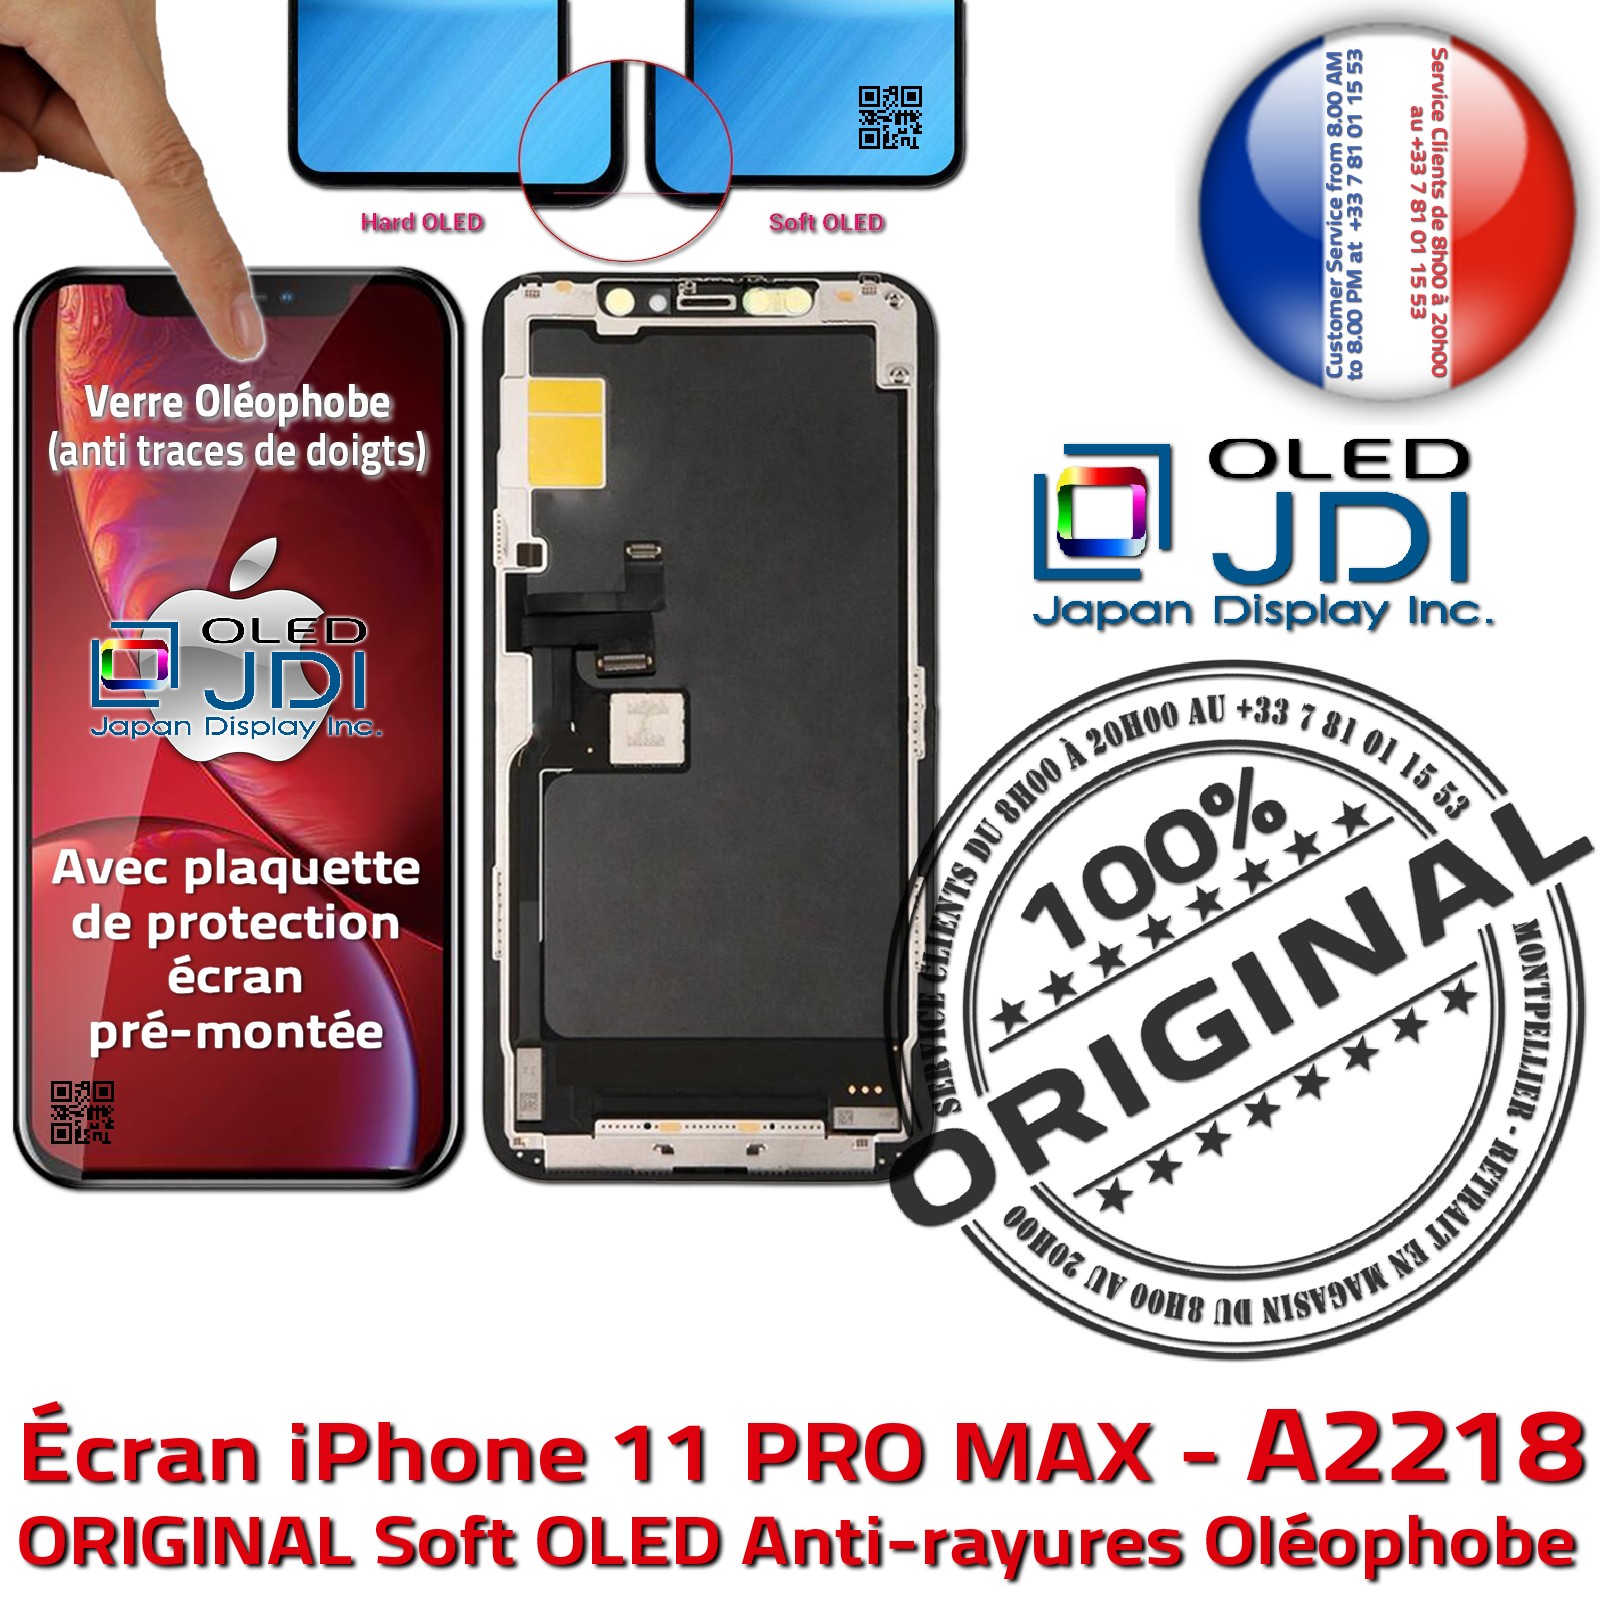 iPhone 11 PRO MAX A2218 Écran soft OLED Apple ORIGINAL Super Retina 6,5 pouces Vitre SmartPhone Affichage sur Châssis Complet